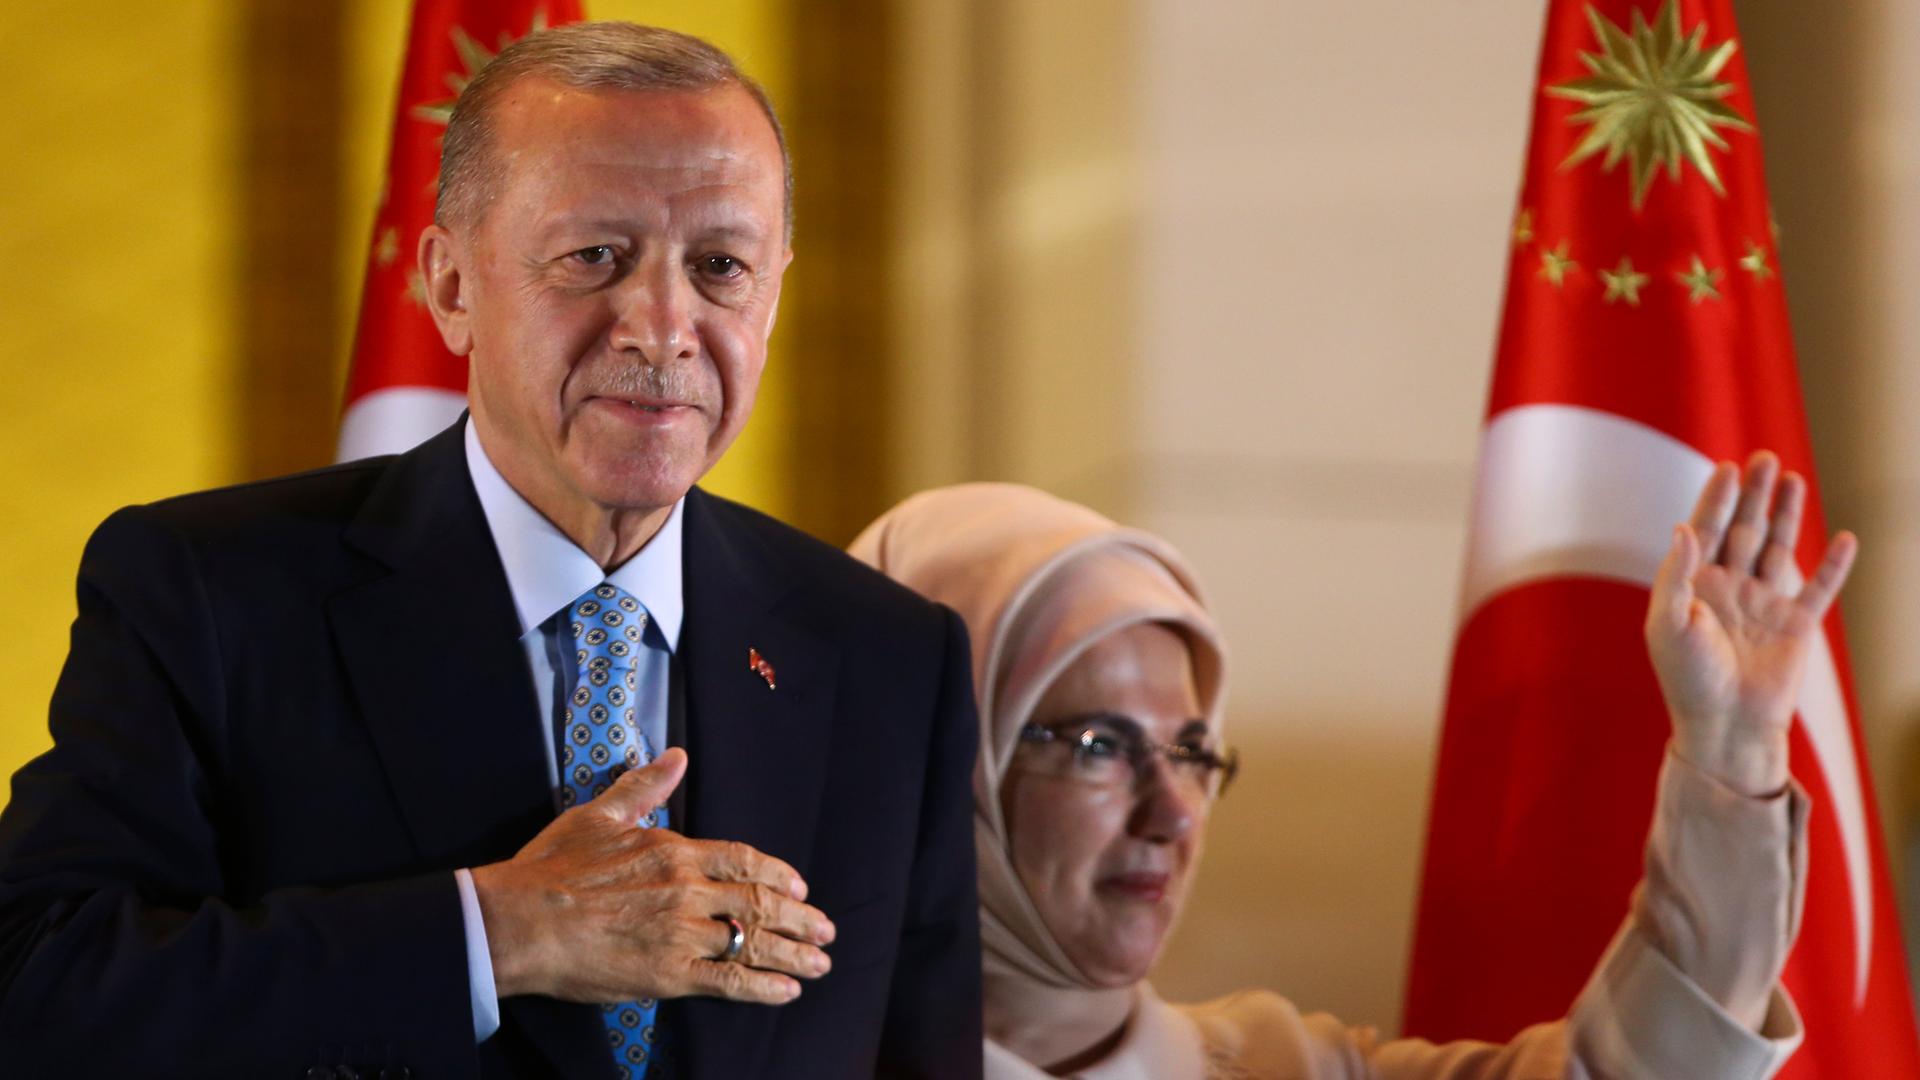 Das Foto zeigt den türkischen Präsidenten Erdogan. Er hält sich eine Hand vor die Brust. Daneben steht seine Frau. Sie winkt.